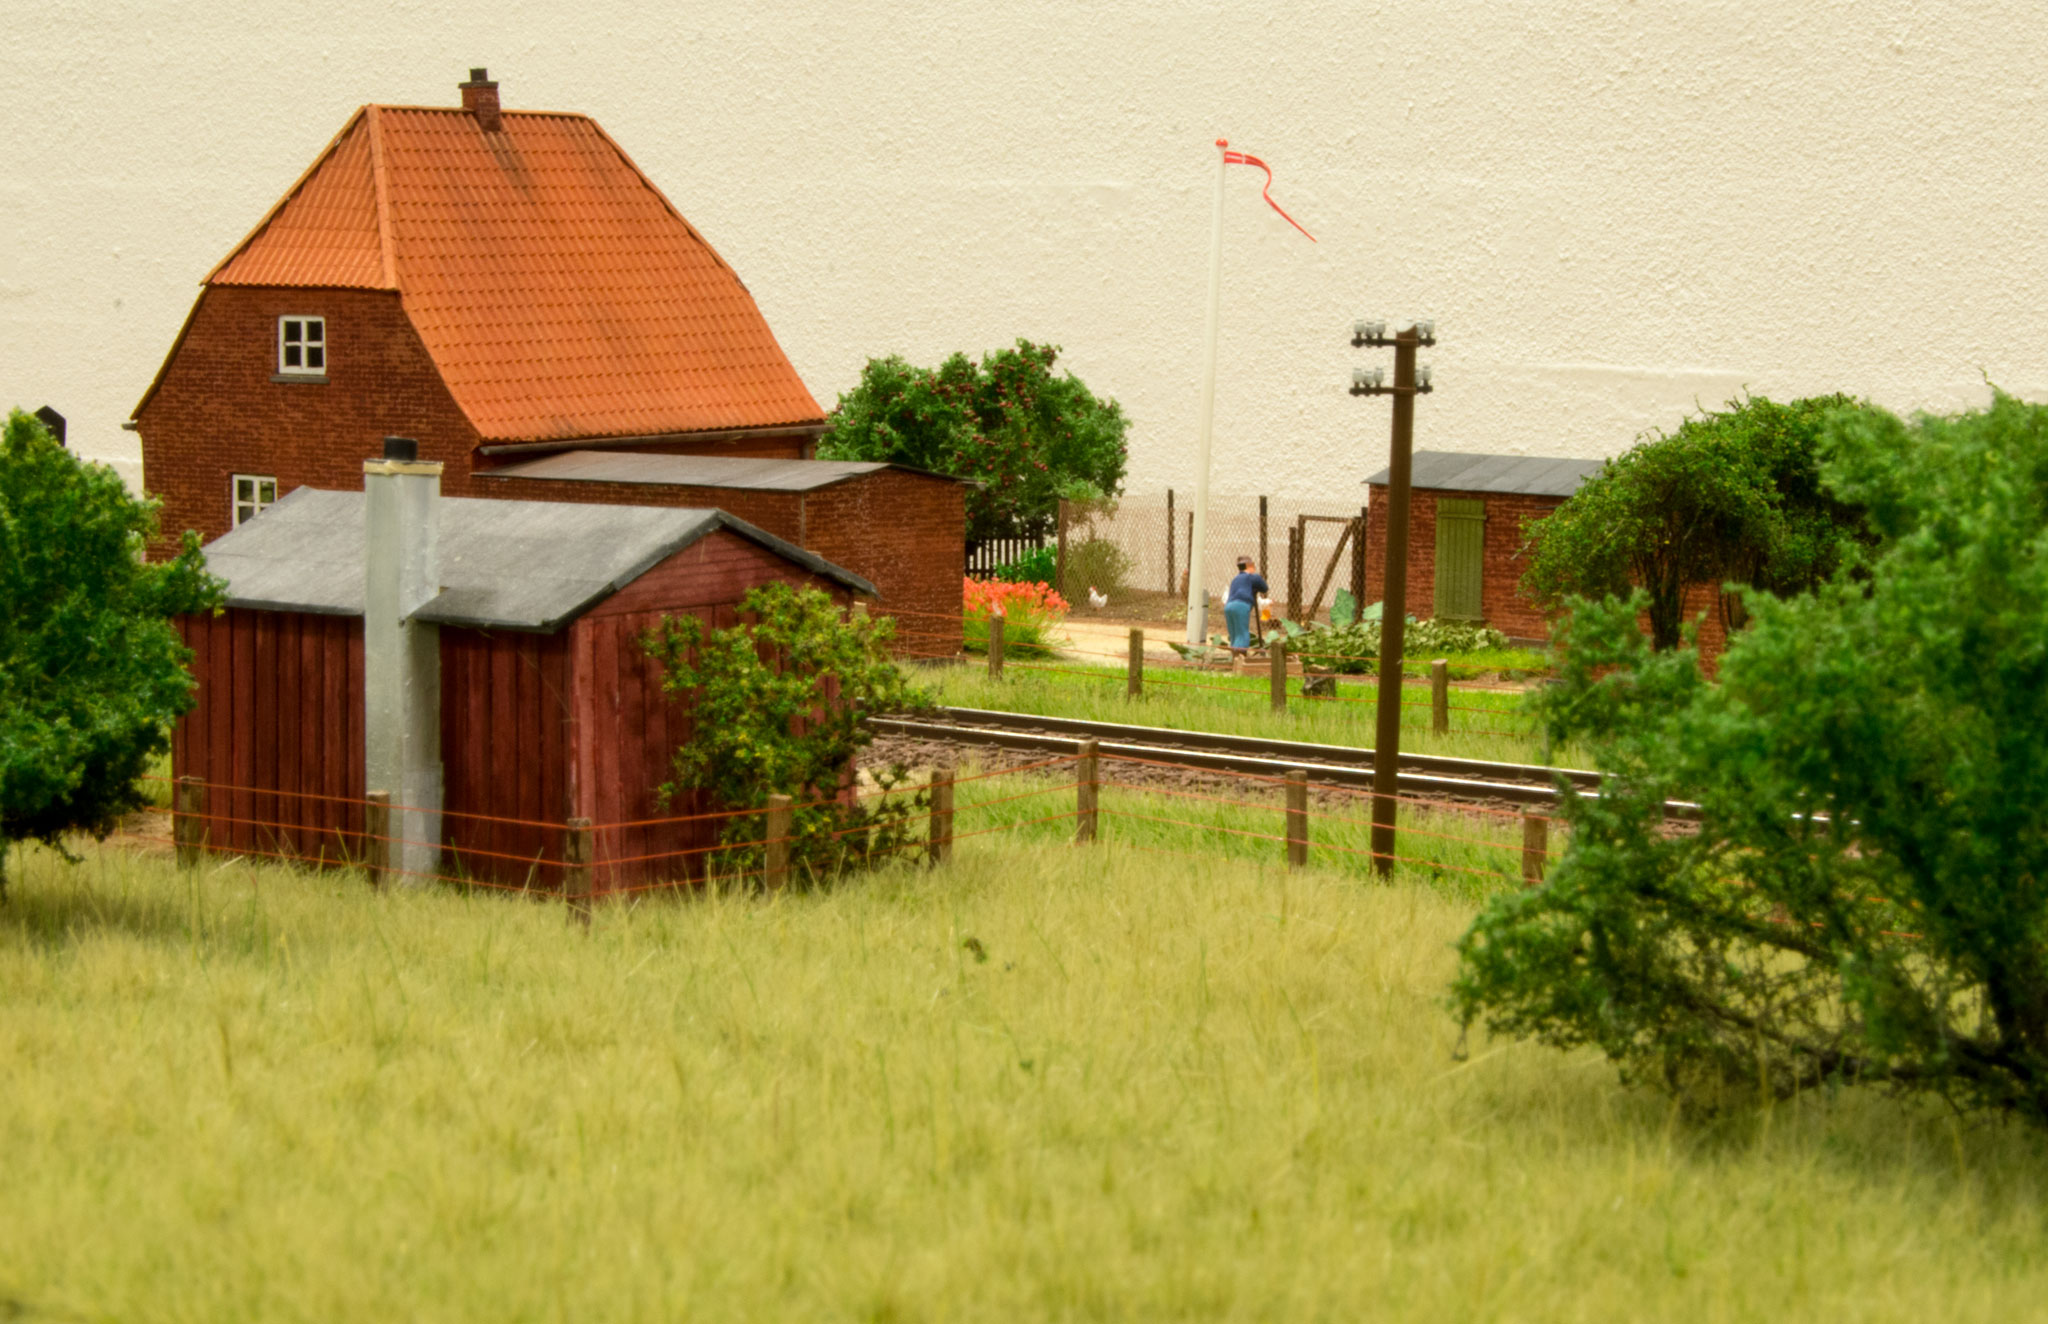 Ledvogterhuset i Søbylund med blomsterbede, flagstang og hønsehus